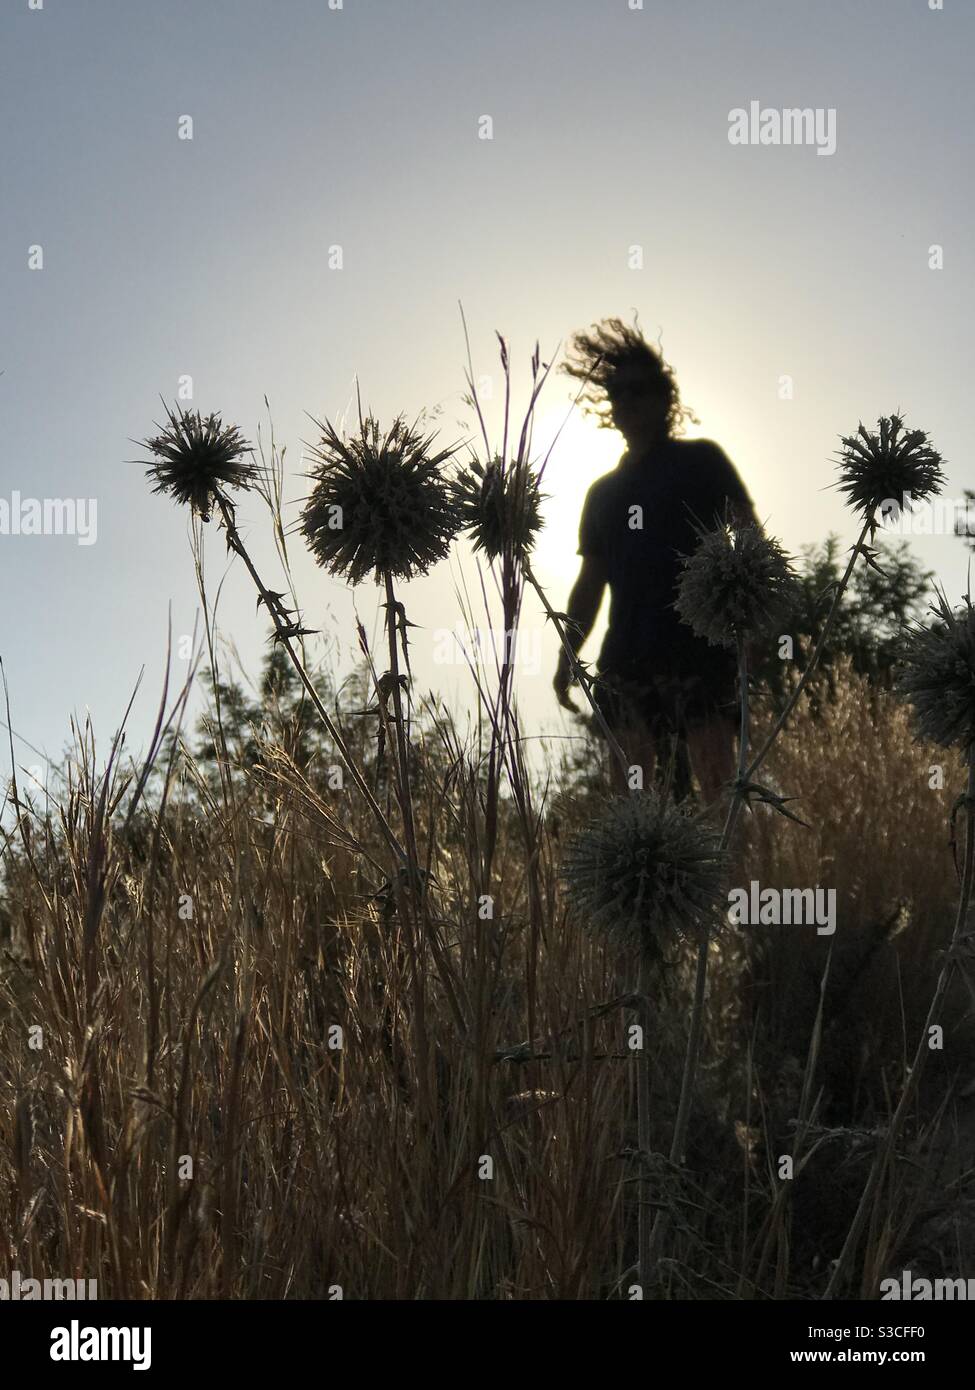 Un homme adulte unique replace ses cheveux bouclés en silhouette parmi les têtes de graines de graminées séchées et les fleurs le long de flanc de colline dans le soleil de l'après-midi d'été paresseux Banque D'Images